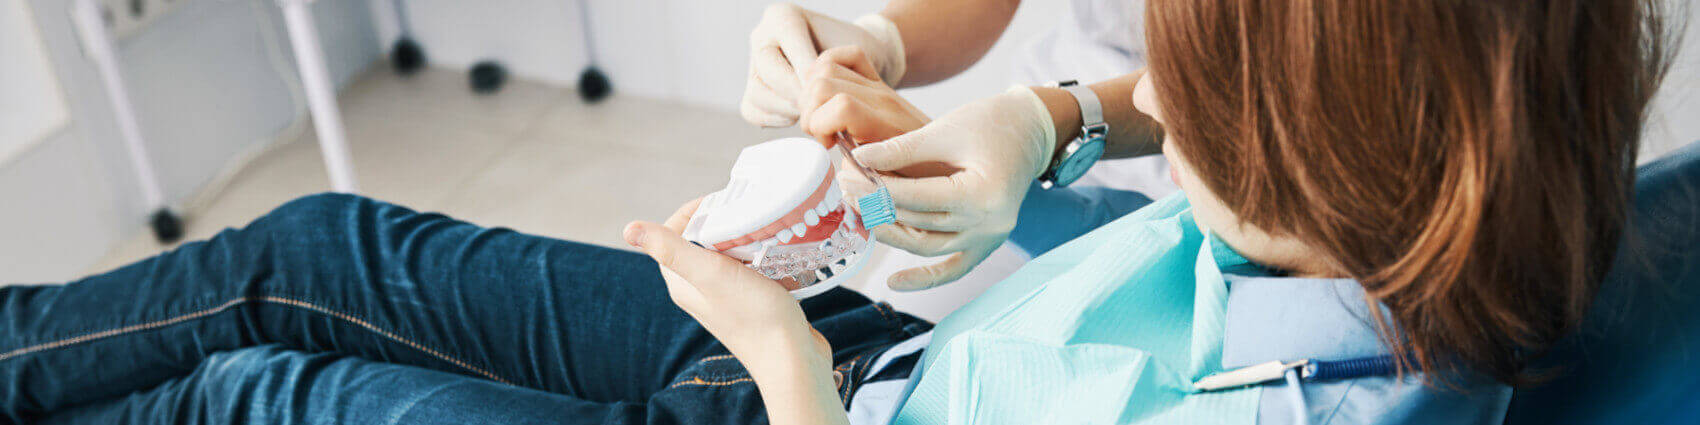 Ein Arzt erklärt einem Jungen das richtige Zähne putzen mit medizinischen Mundpflegeprodukten